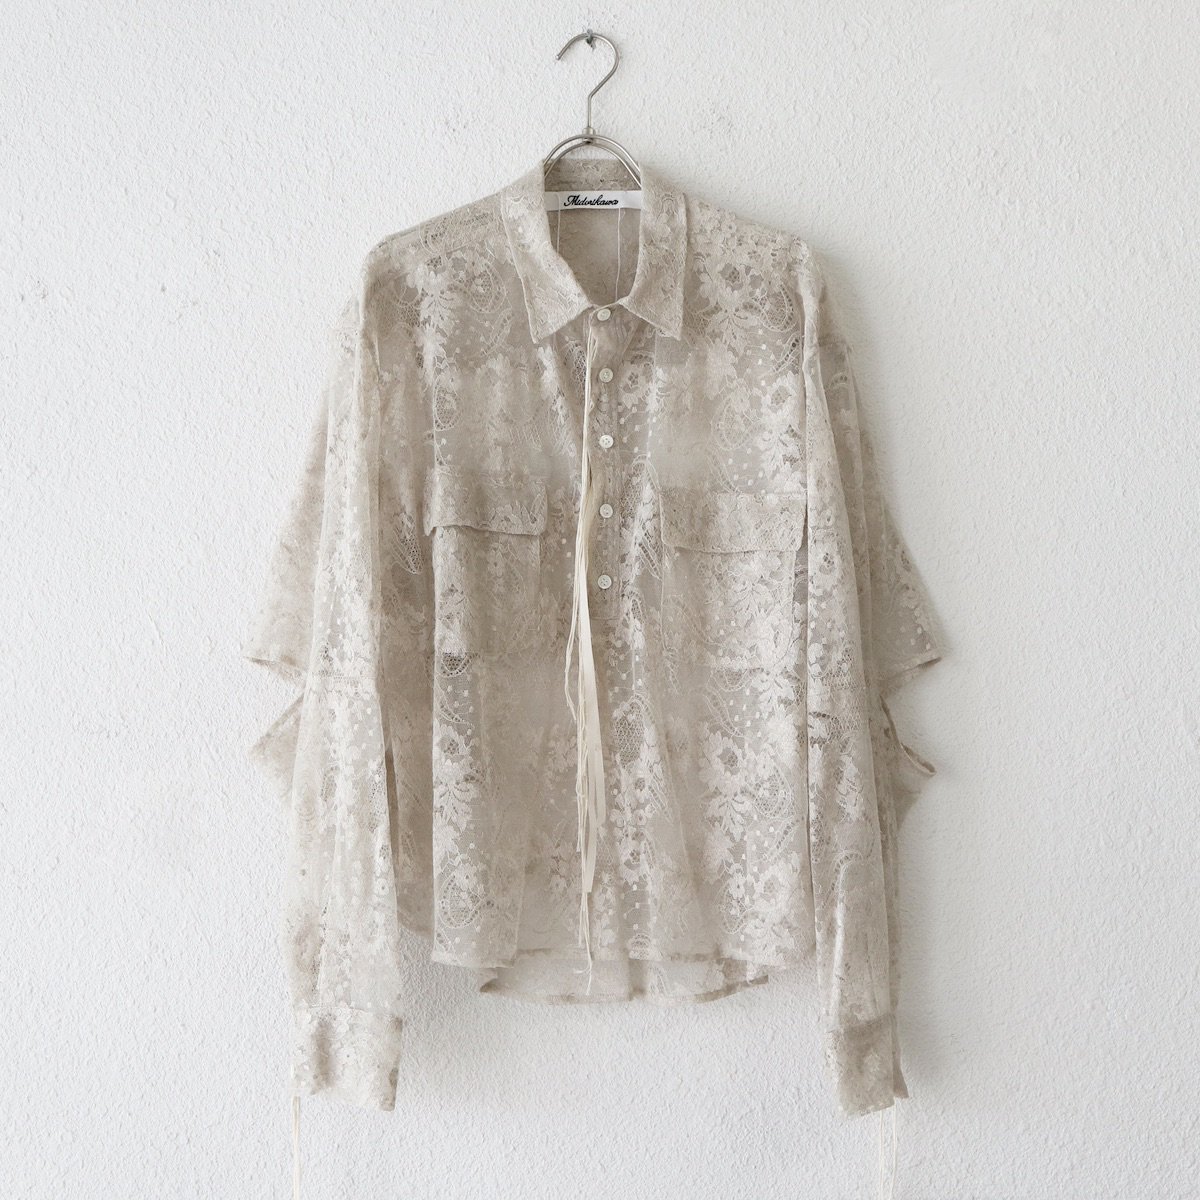 Midorikawa / Lace pullover shirt-Midorikawaの通販EQUAL